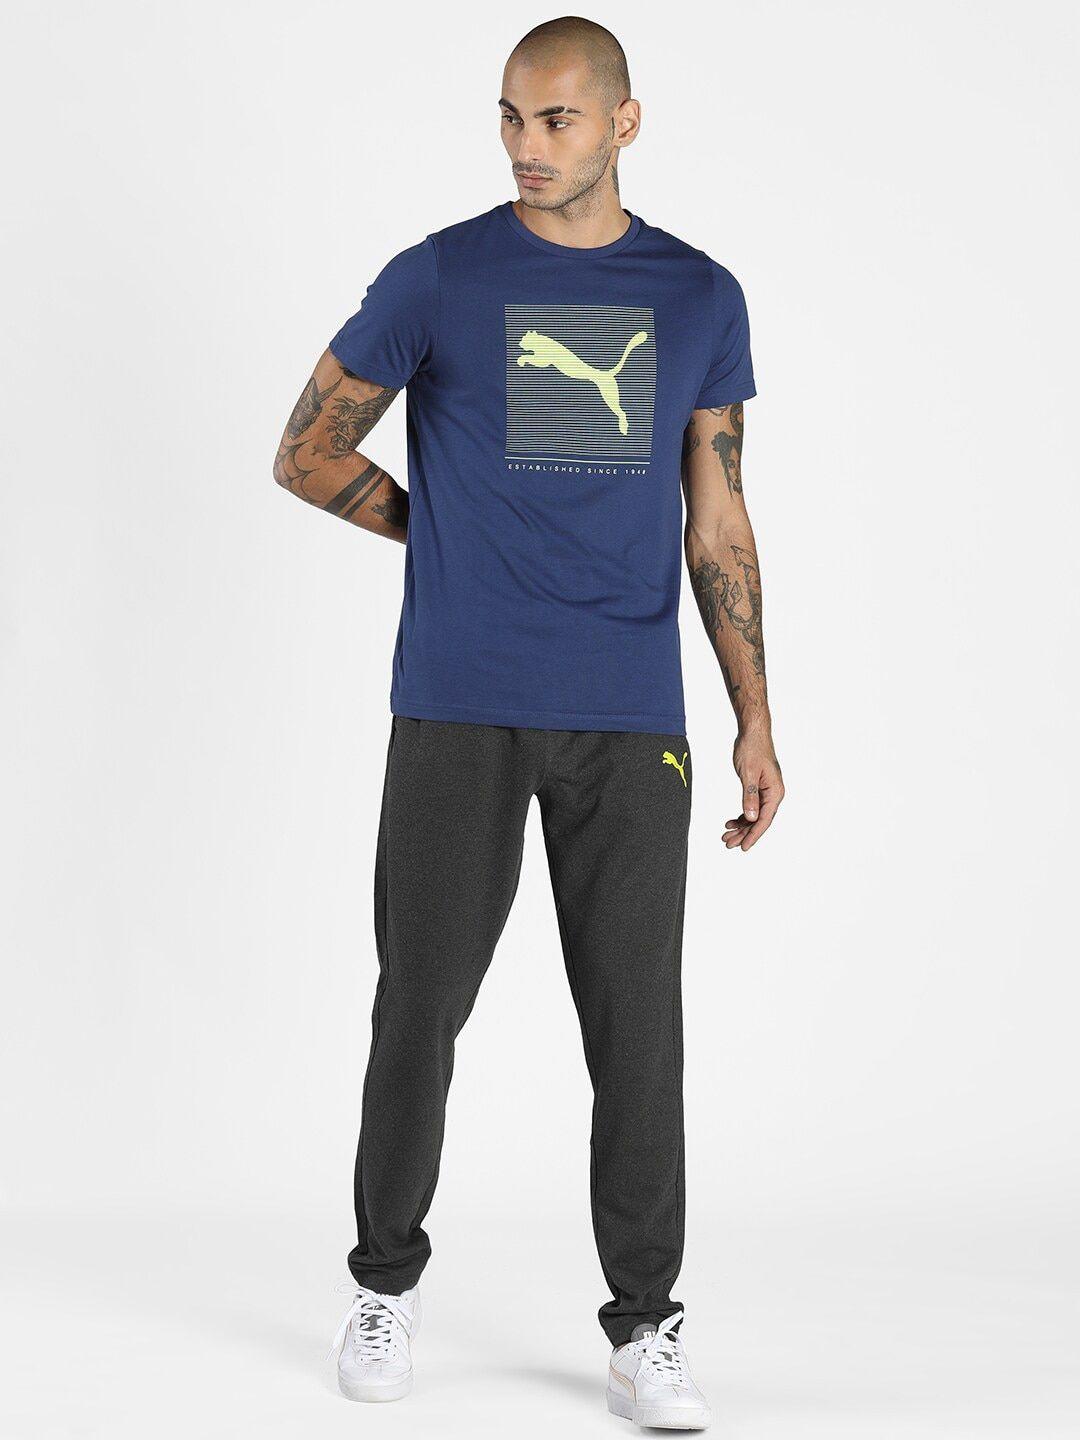 Puma Men Blue & Fluorescent Green Printed Cotton T-shirt